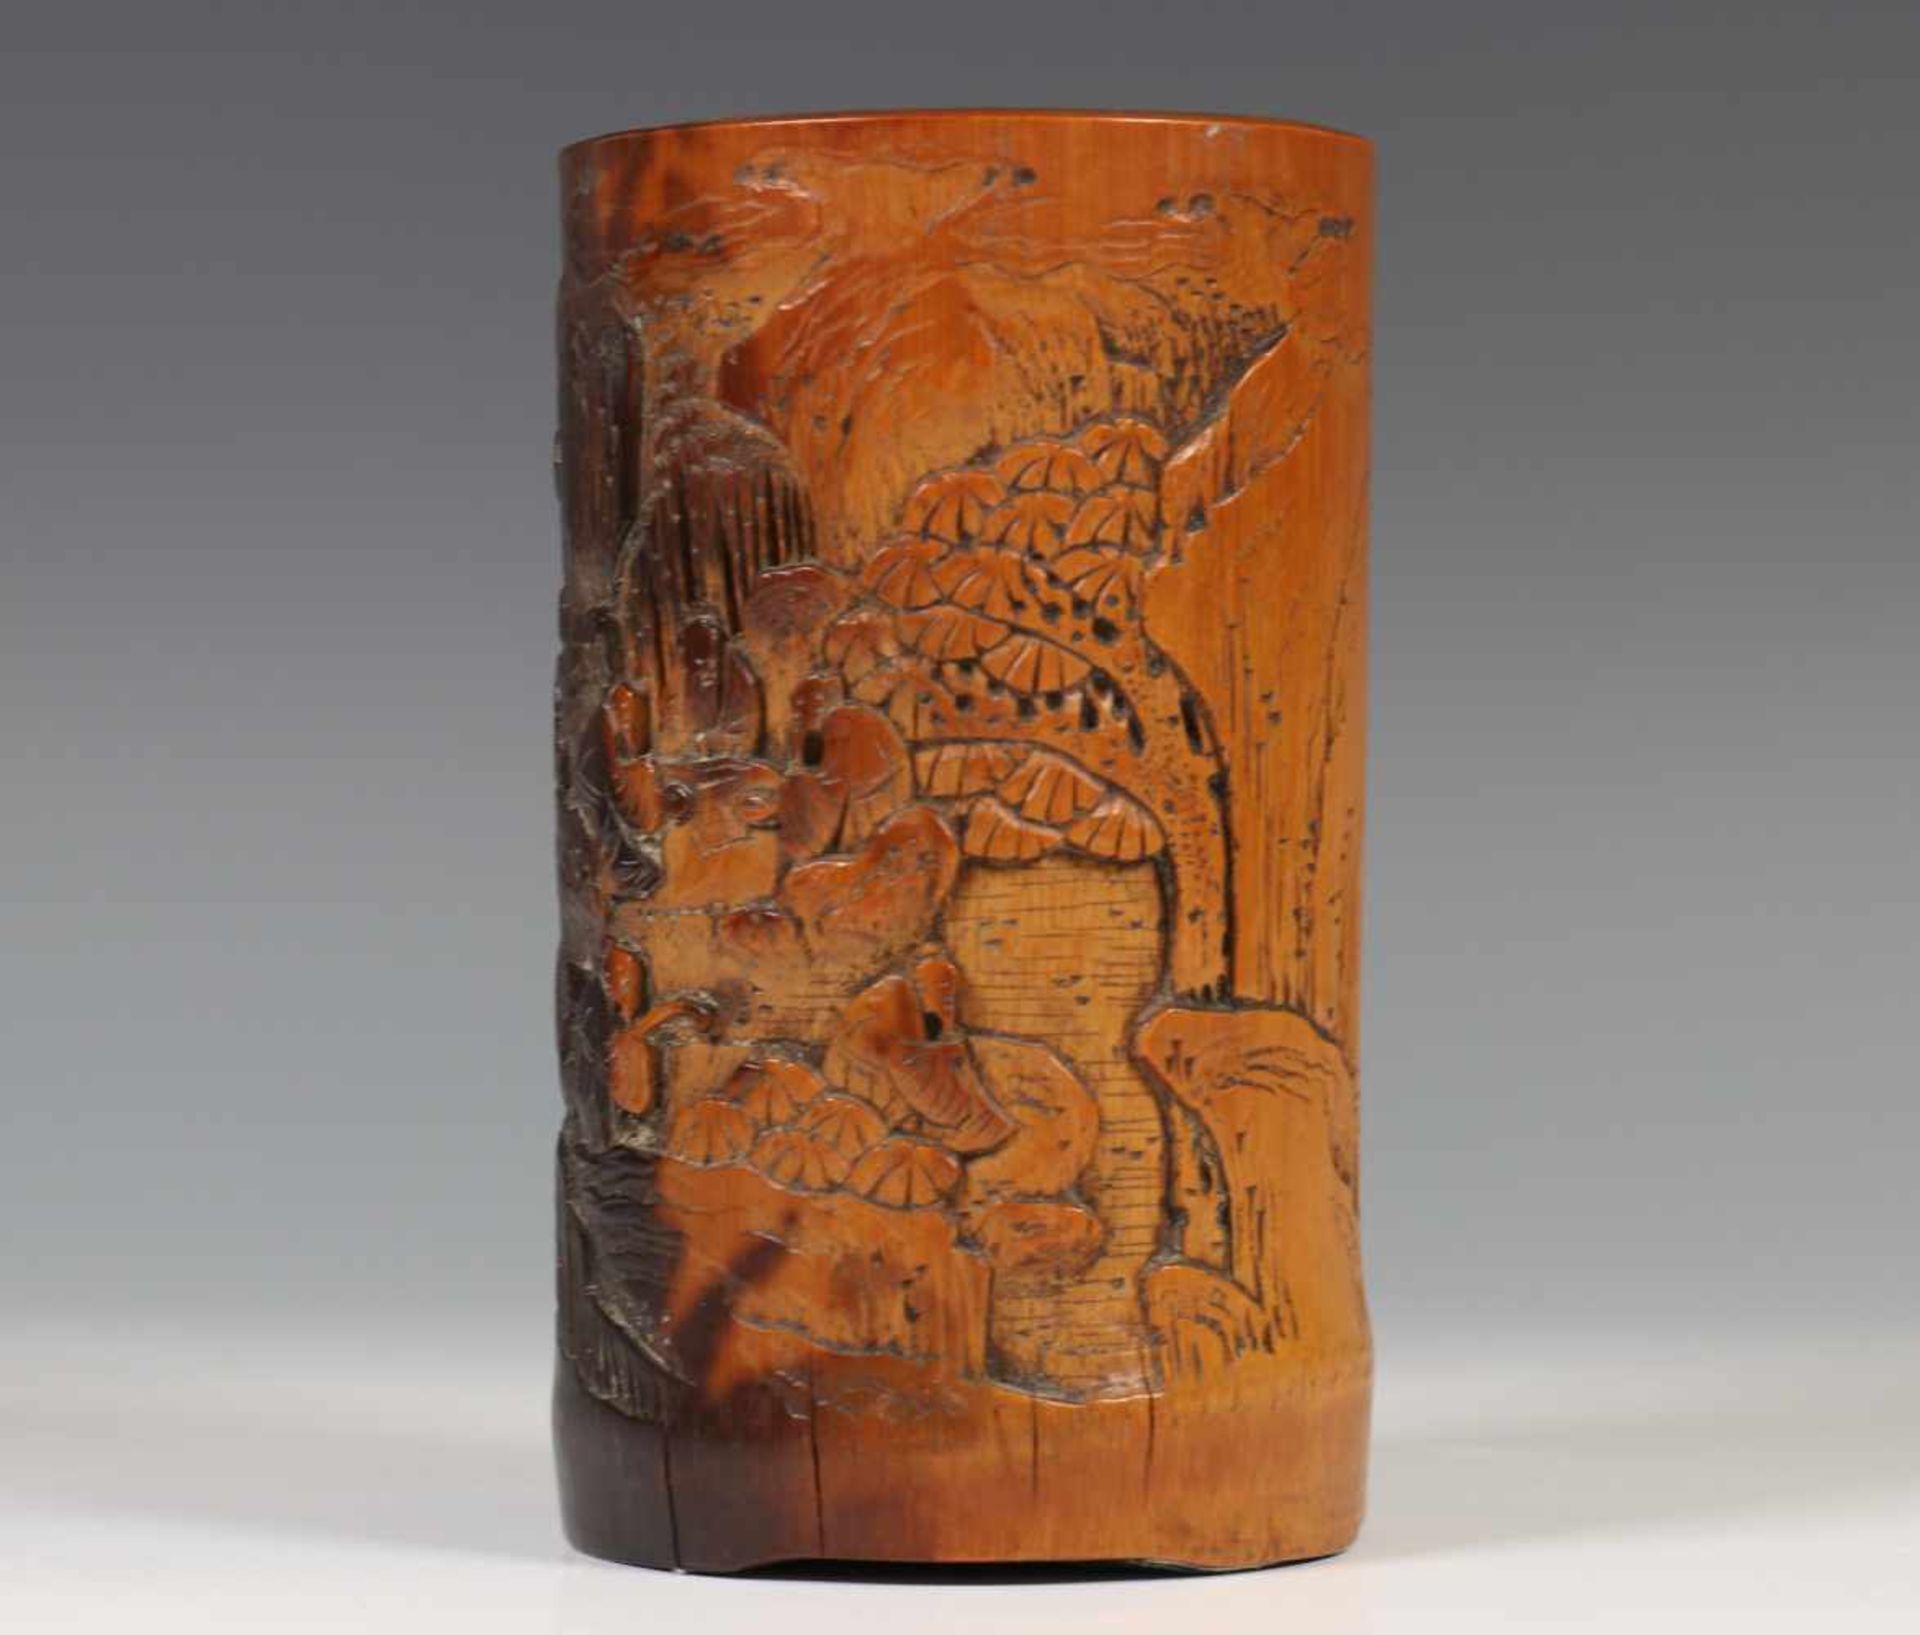 Bamboe penseelpot, 19e eeuw,met gestoken relief van go-spelende figuren in landschap. Met - Bild 2 aus 4